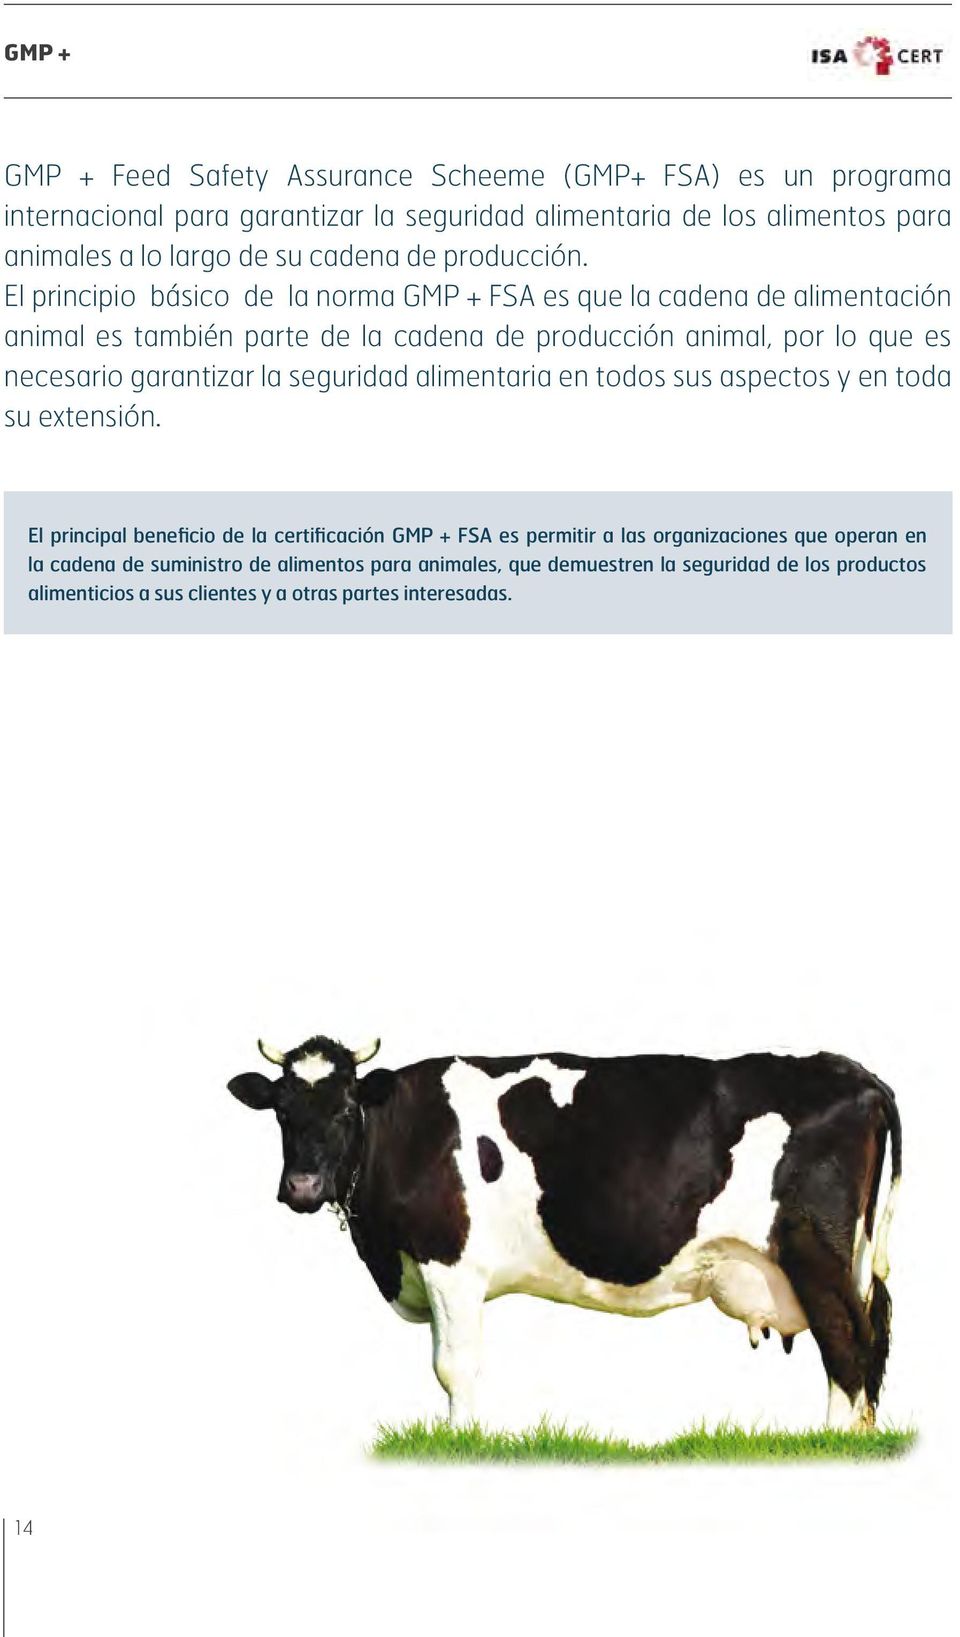 El principio básico de la norma GMP + FSA es que la cadena de alimentación animal es también parte de la cadena de producción animal, por lo que es necesario garantizar la